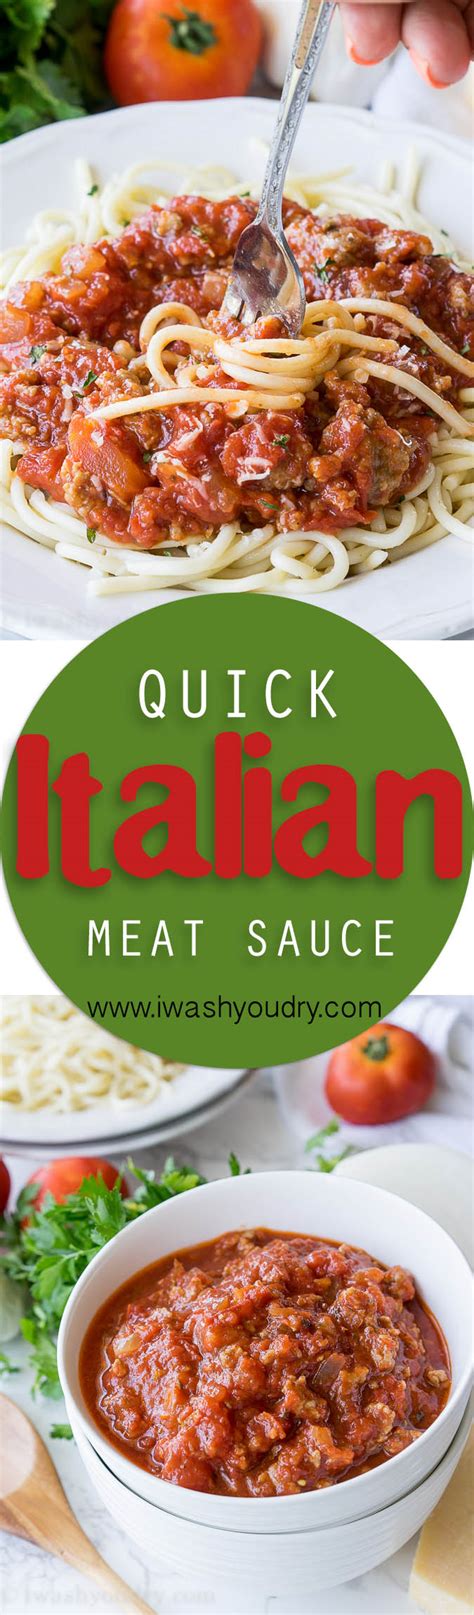 Jeden tag werden tausende neue, hochwertige bilder hinzugefügt. Quick and Easy Italian Meat Sauce | I Wash You Dry